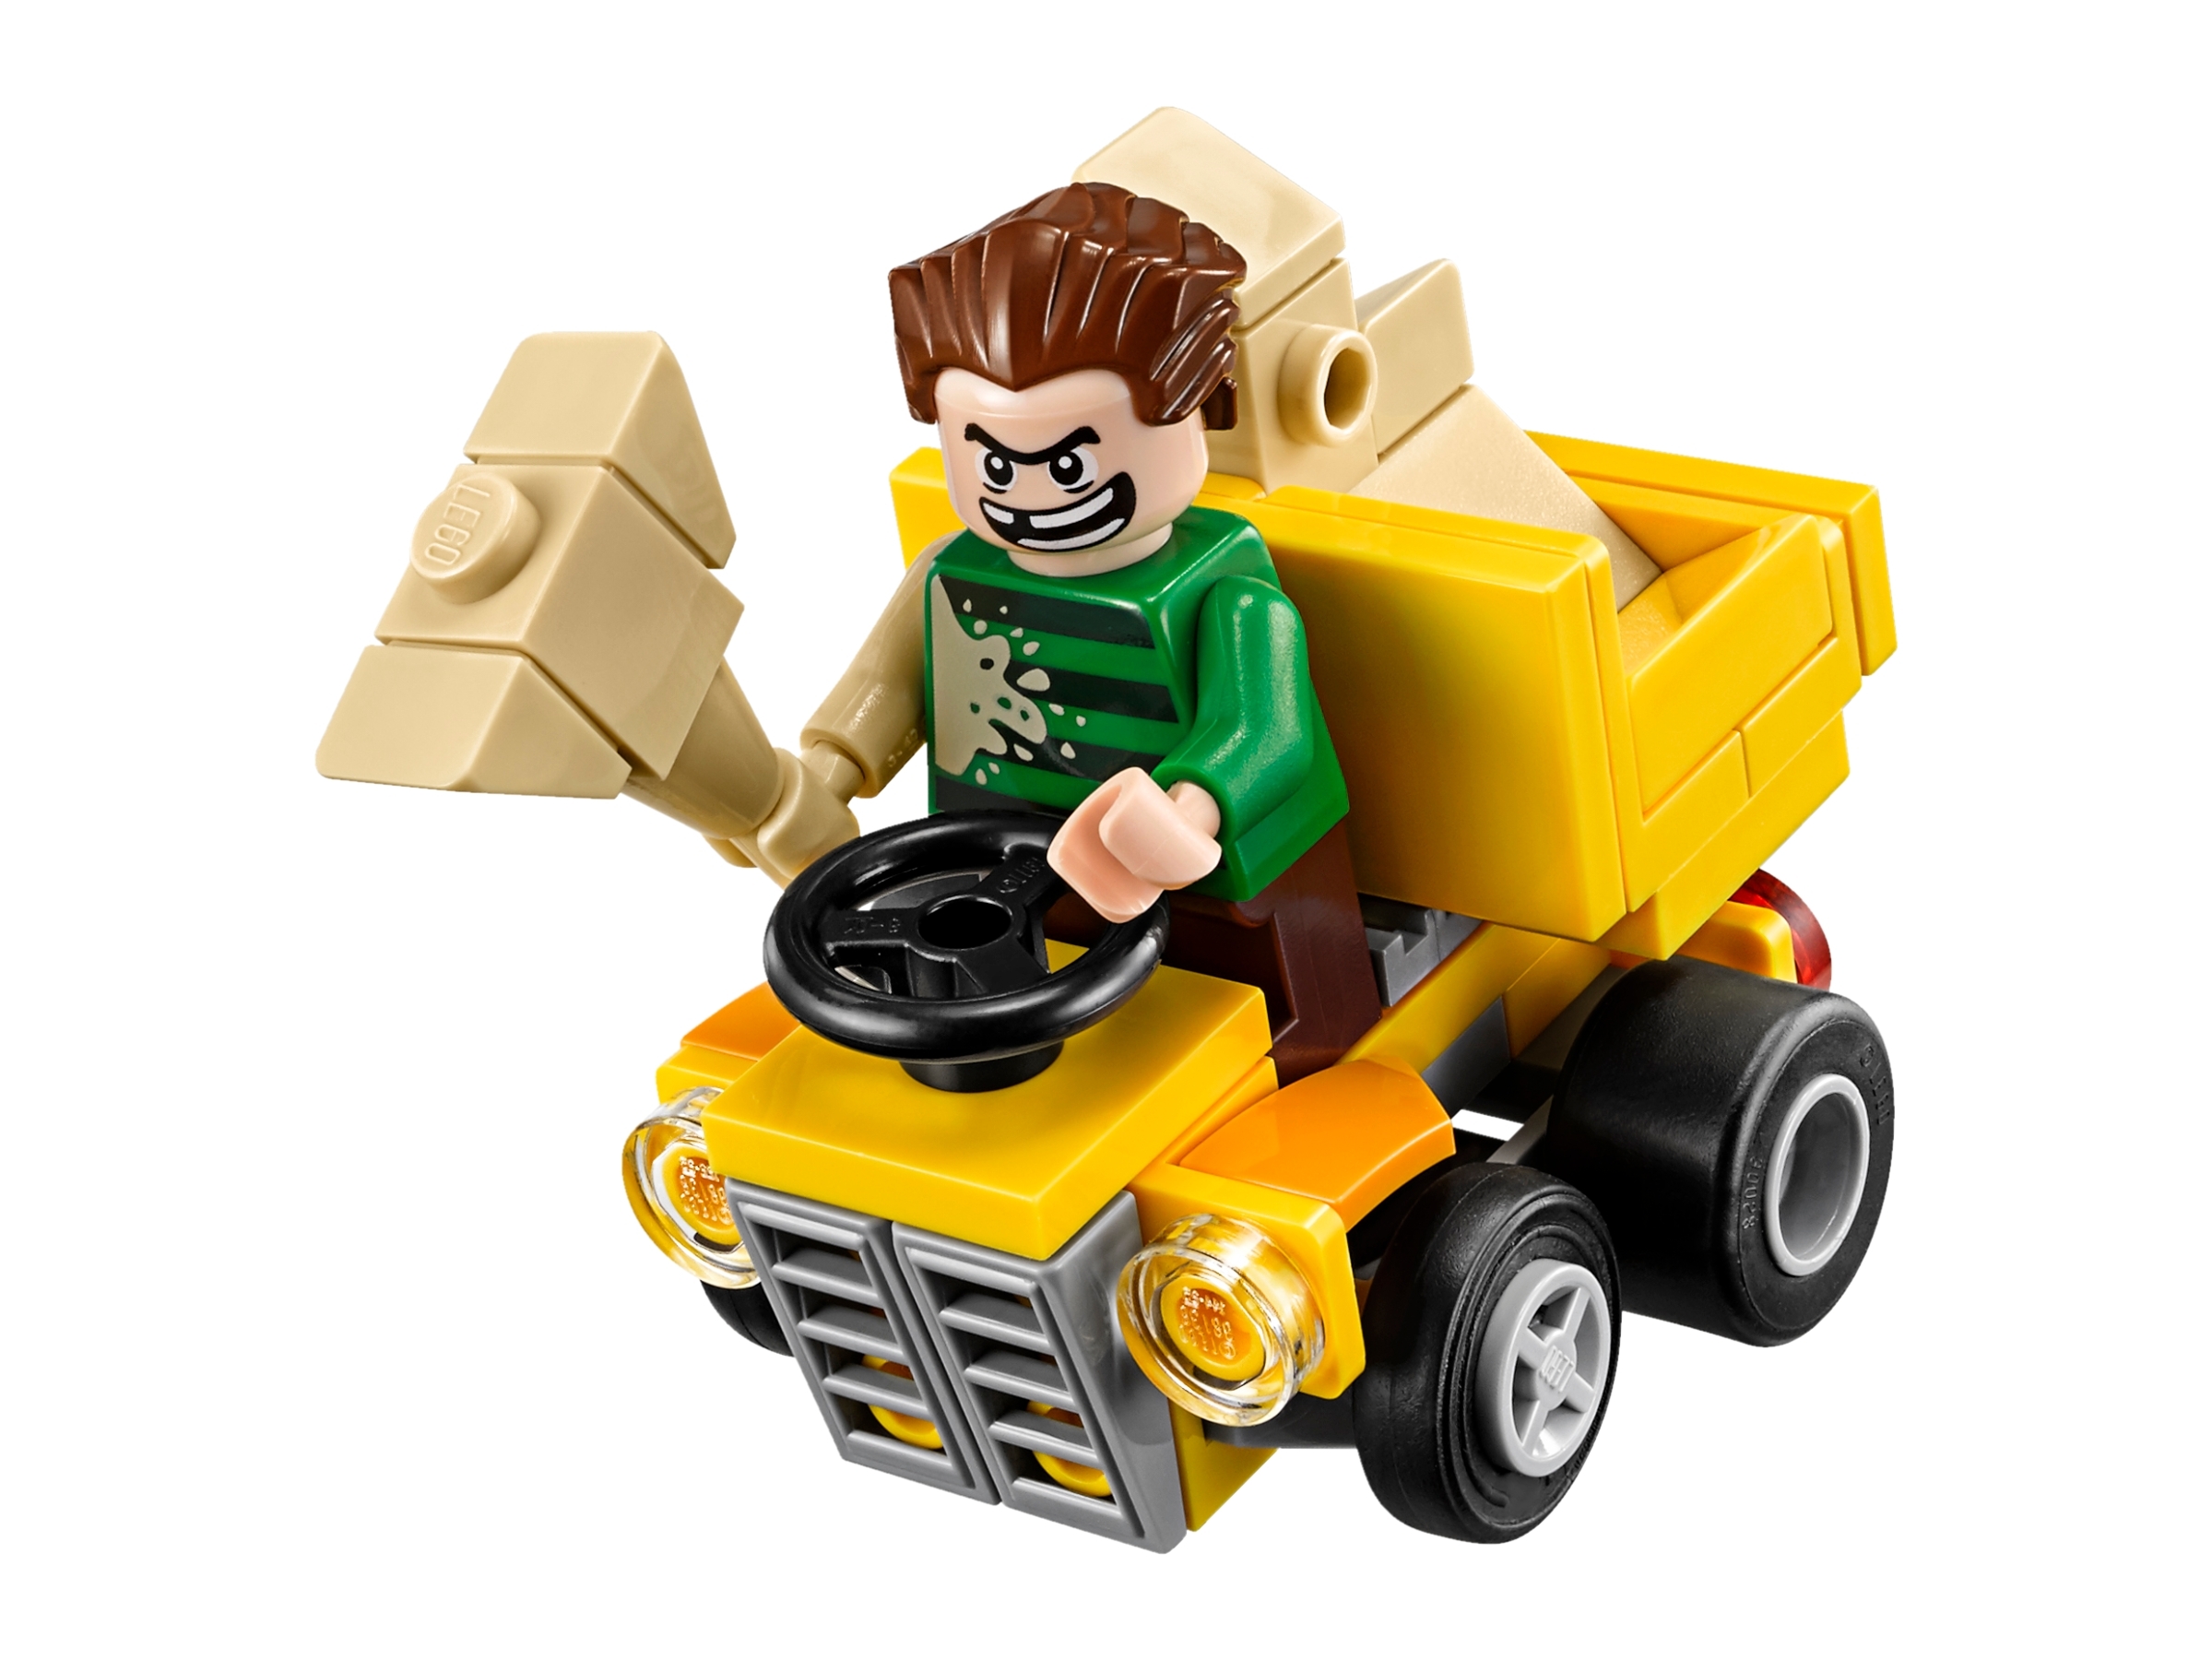 LEGO SANDMAN MINI FIGURE 76089 MIGHTY MICROS SPIDERMAN MARVEL AVENGERS 